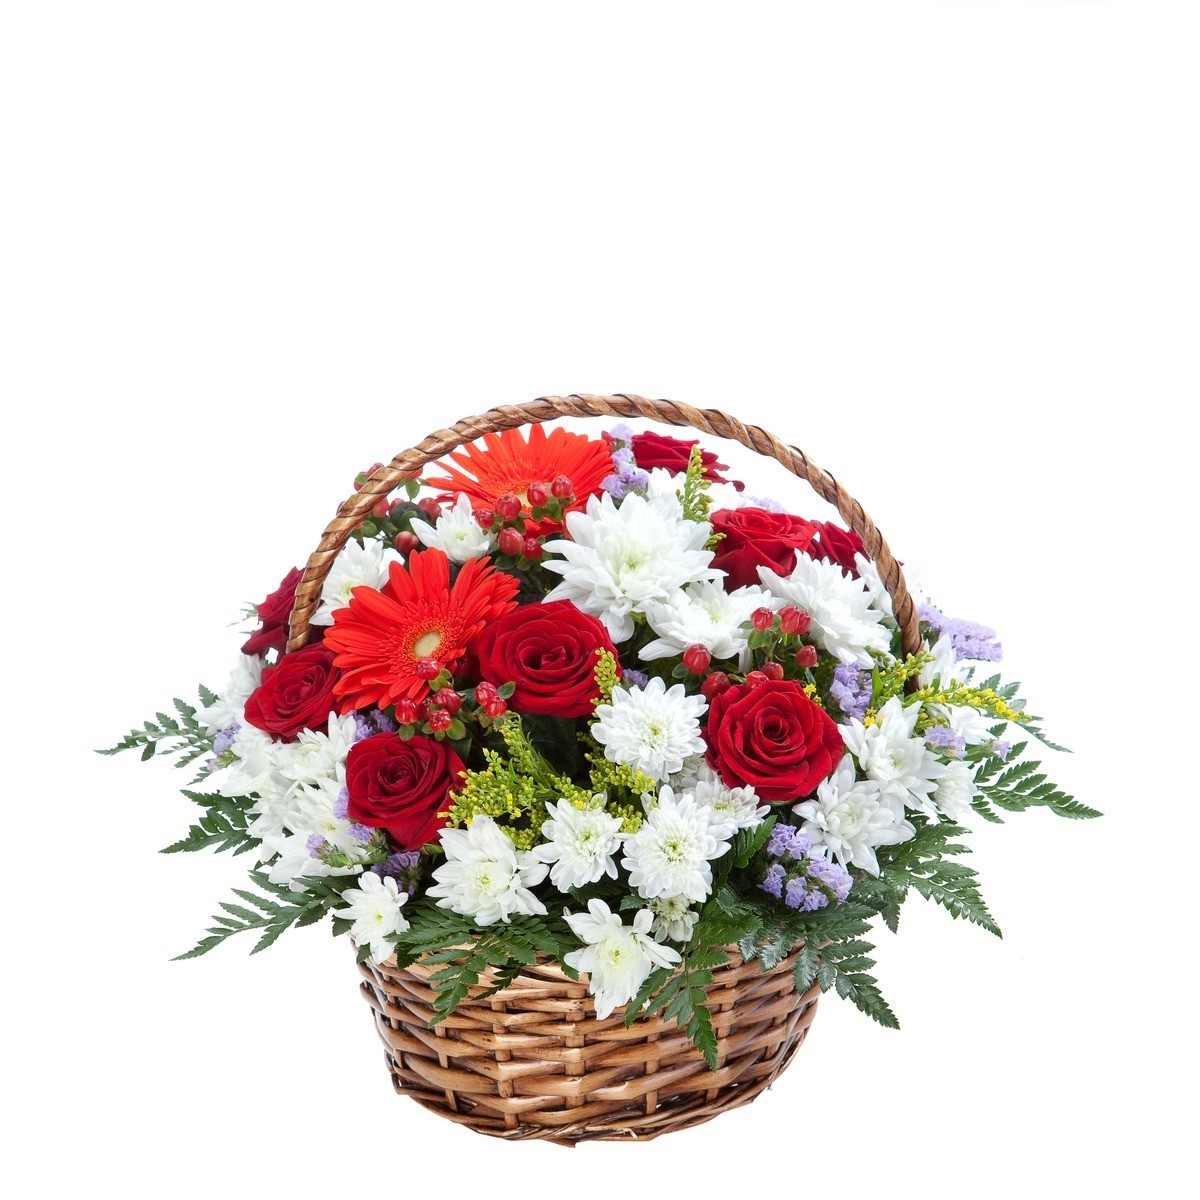 K6 Flower Arrangement With Roses Gerberas And Chrysanthemums Flowers Ee